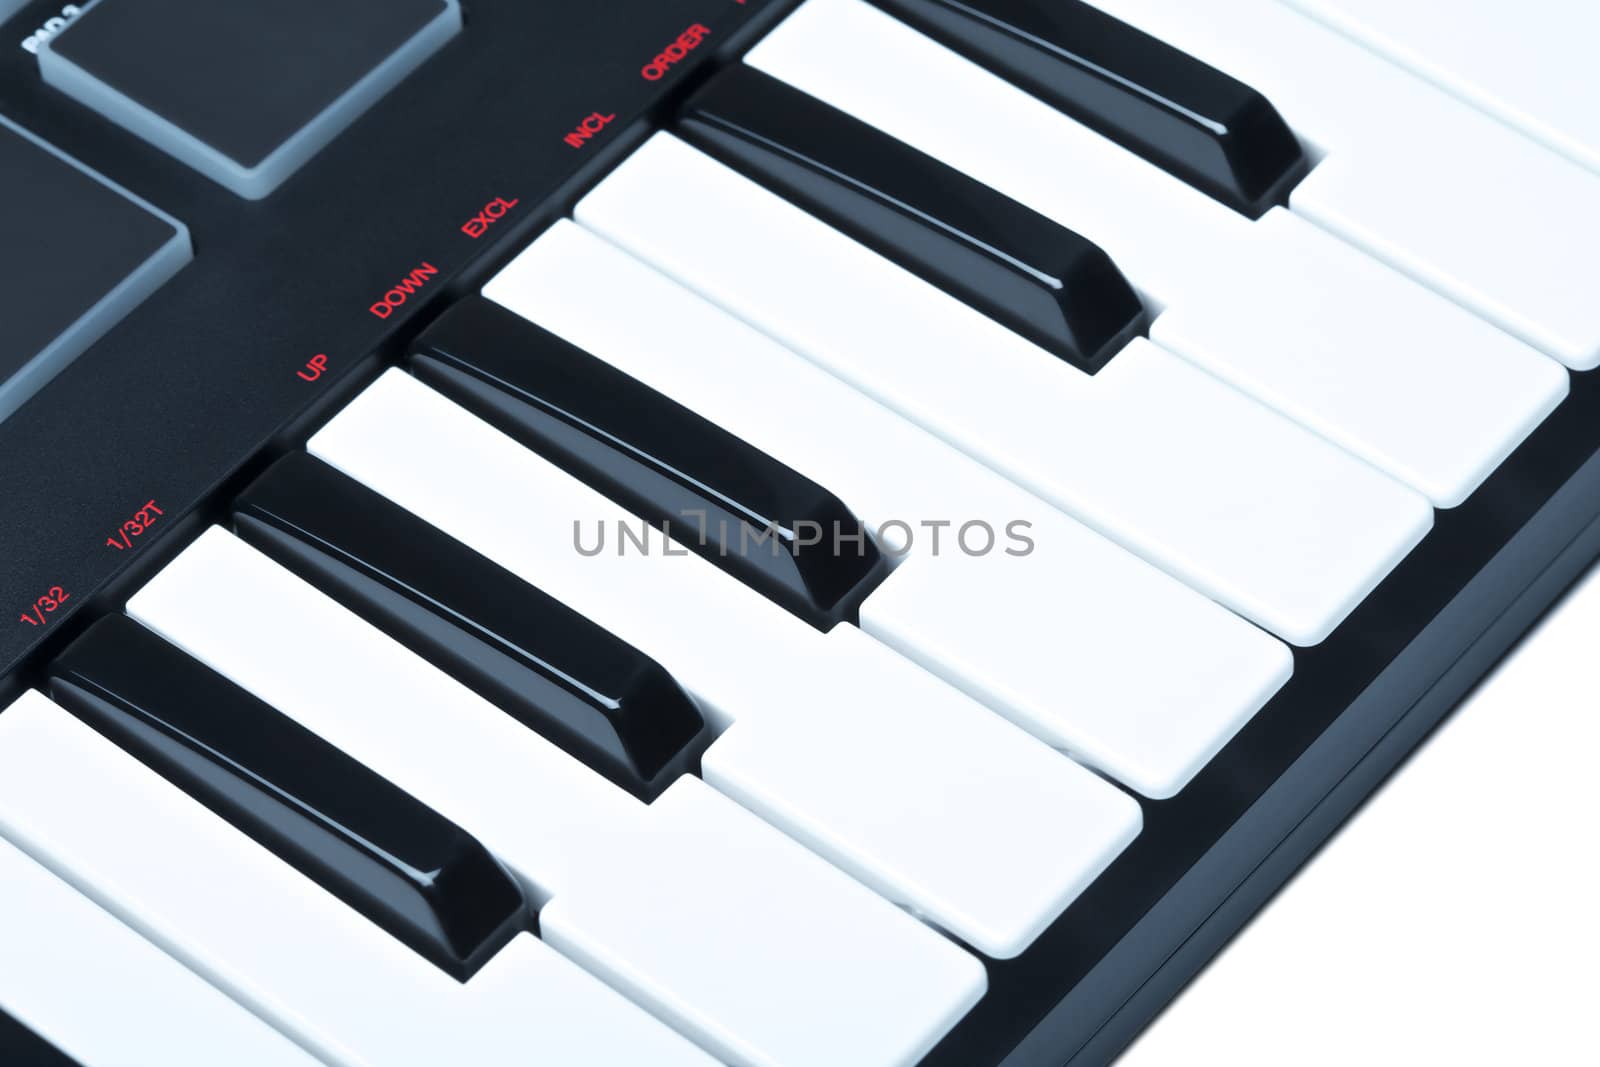 Digital Midi Keyboard by petr_malyshev